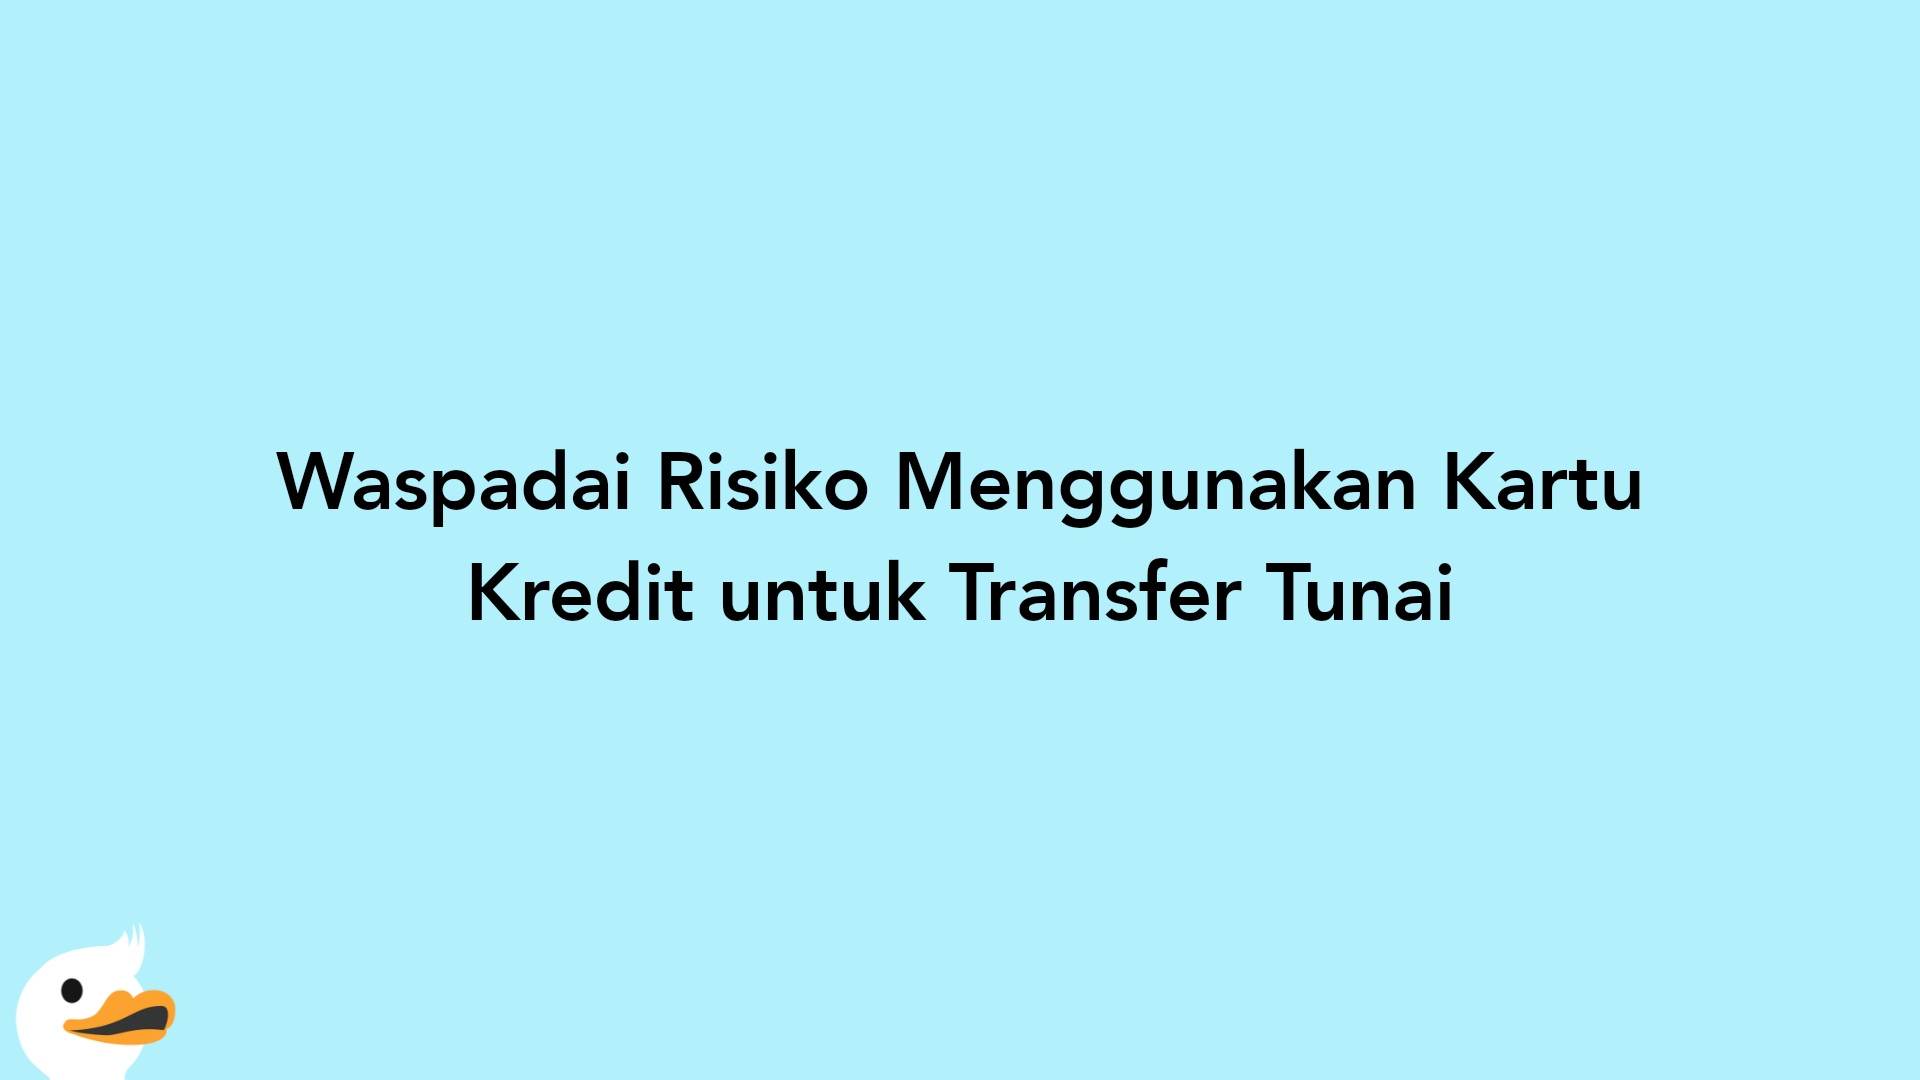 Waspadai Risiko Menggunakan Kartu Kredit untuk Transfer Tunai